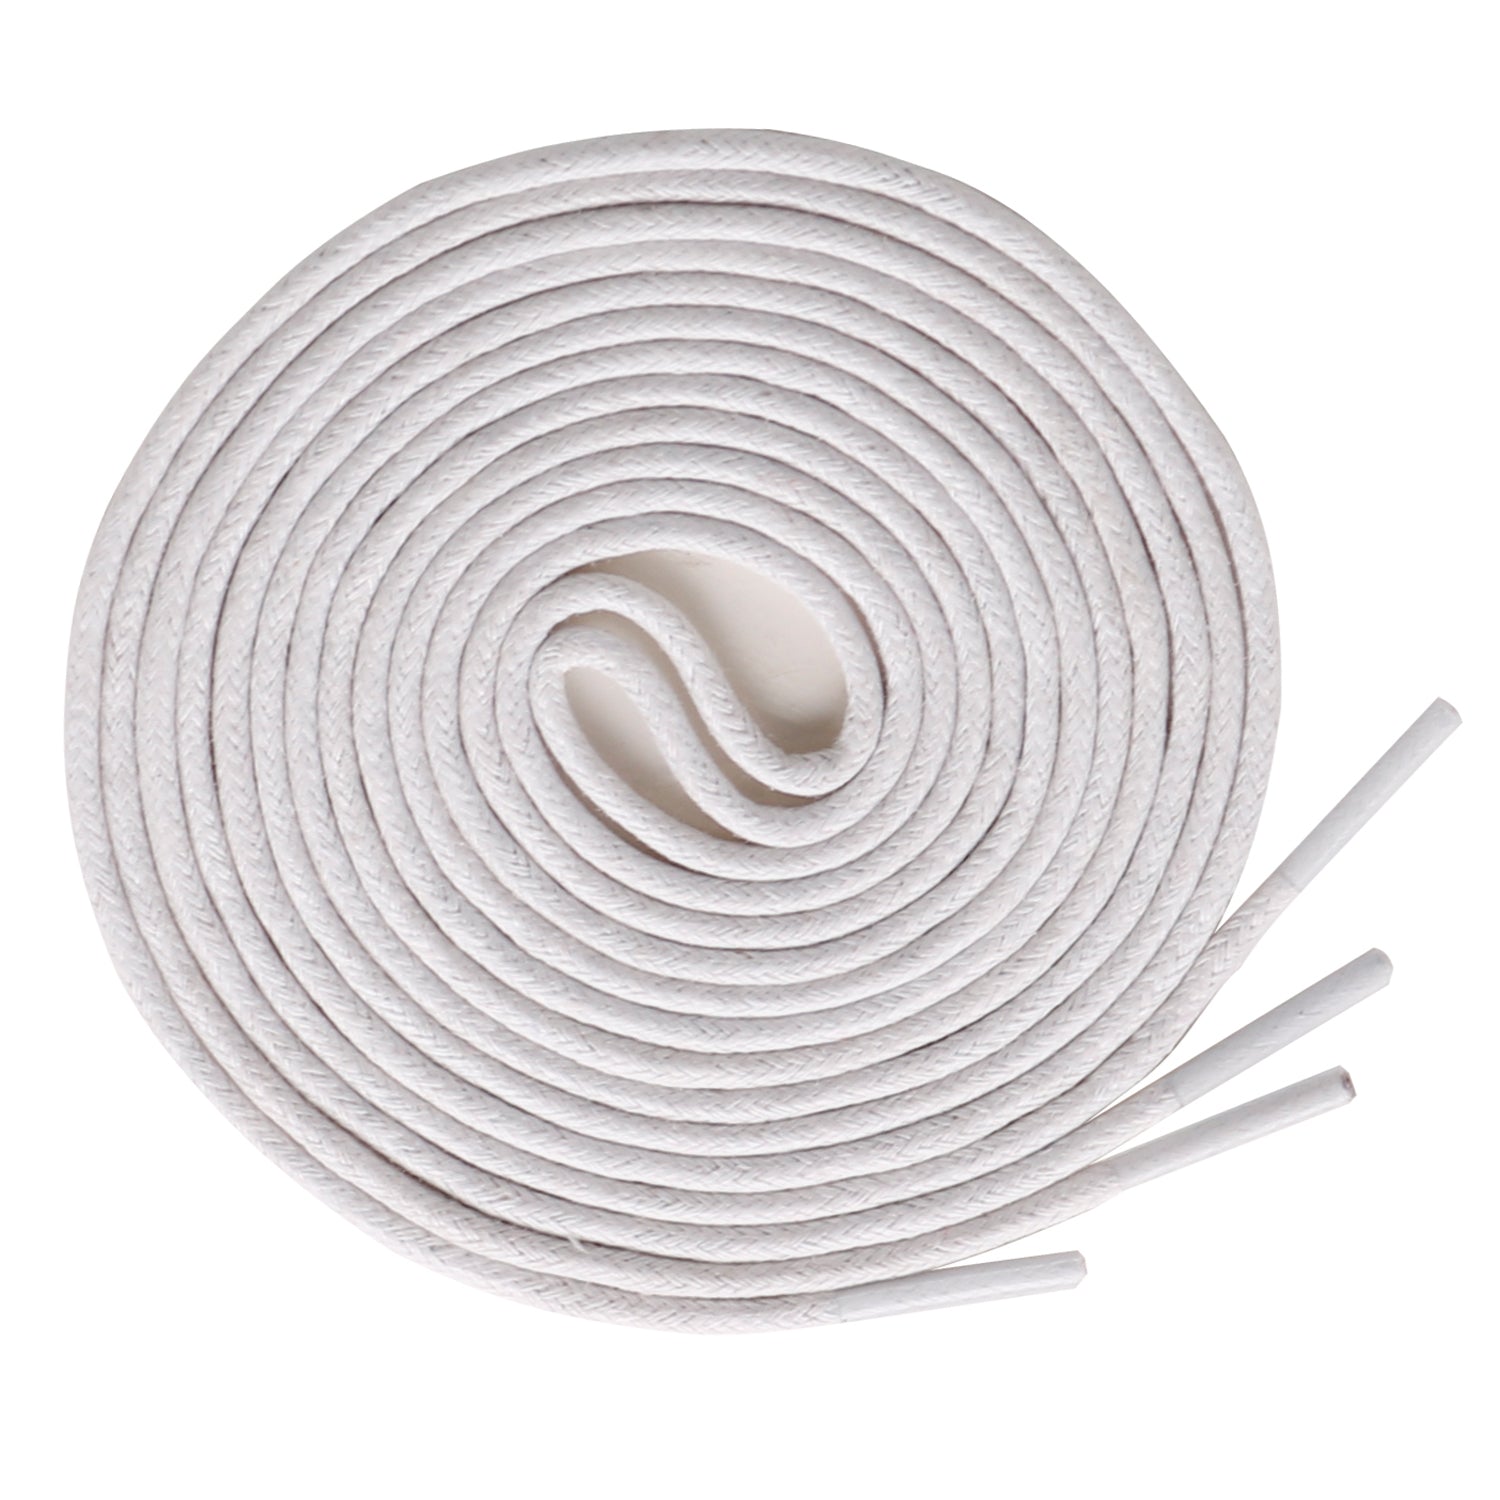 Cordones de algodón encerado - Paquete de 1 par YX-01